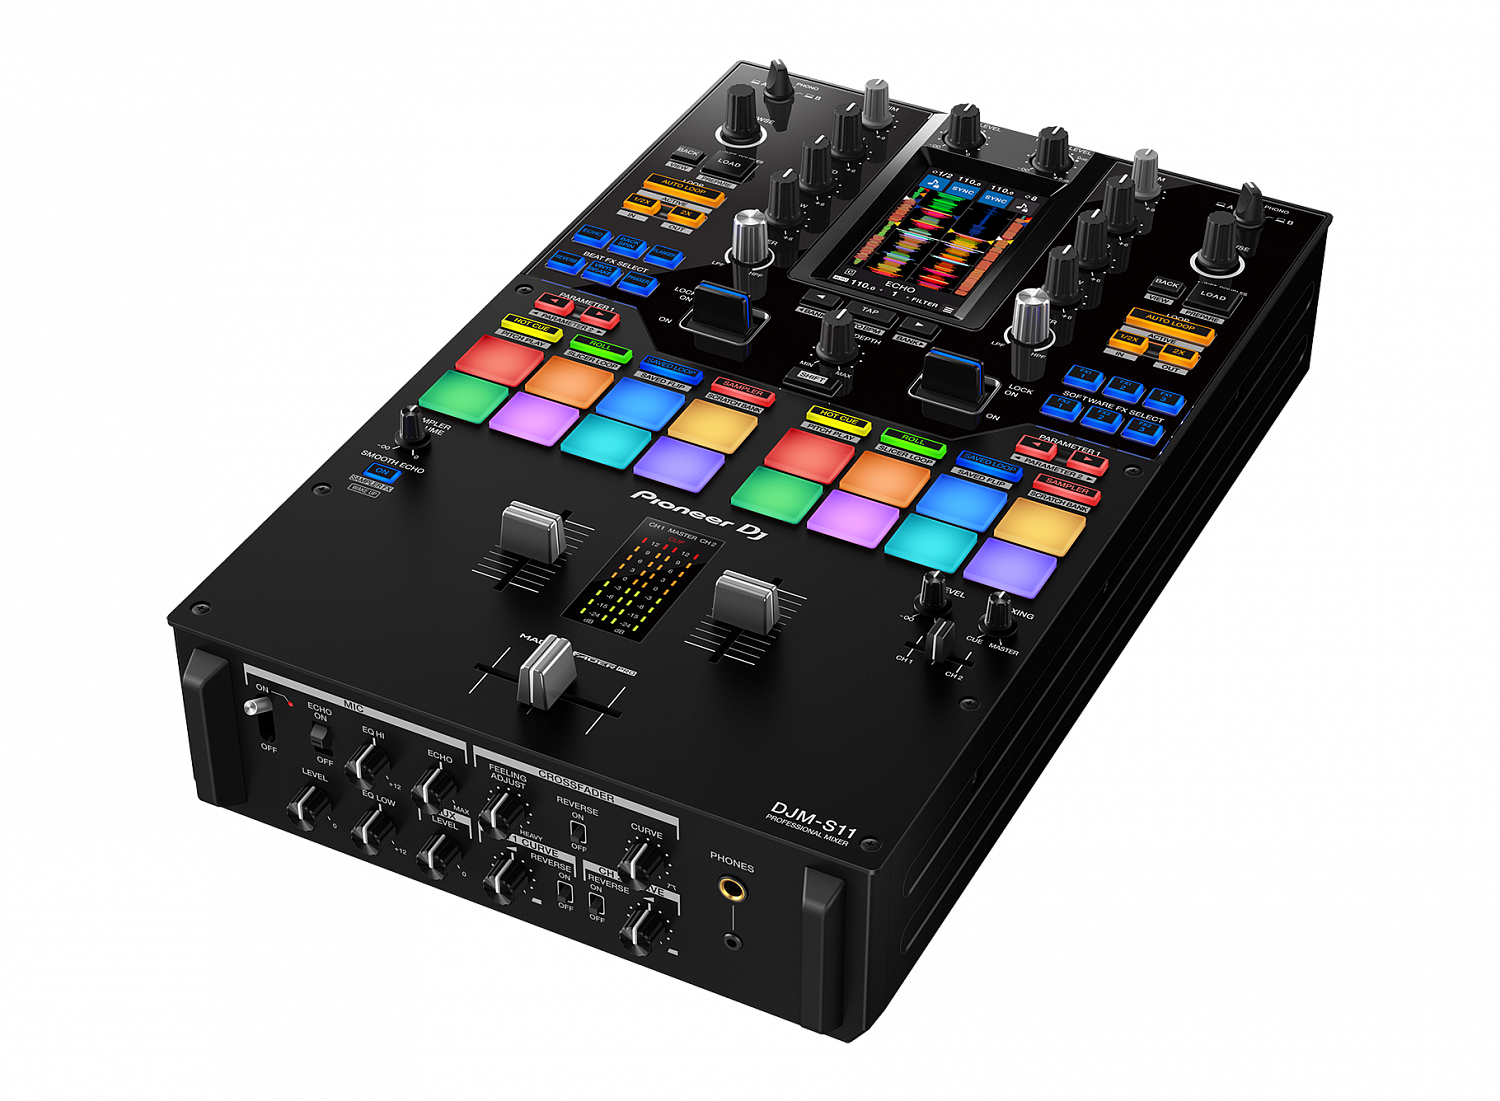 Pioneer DJ | Новый микшерный пульт для скретча DJM-S11